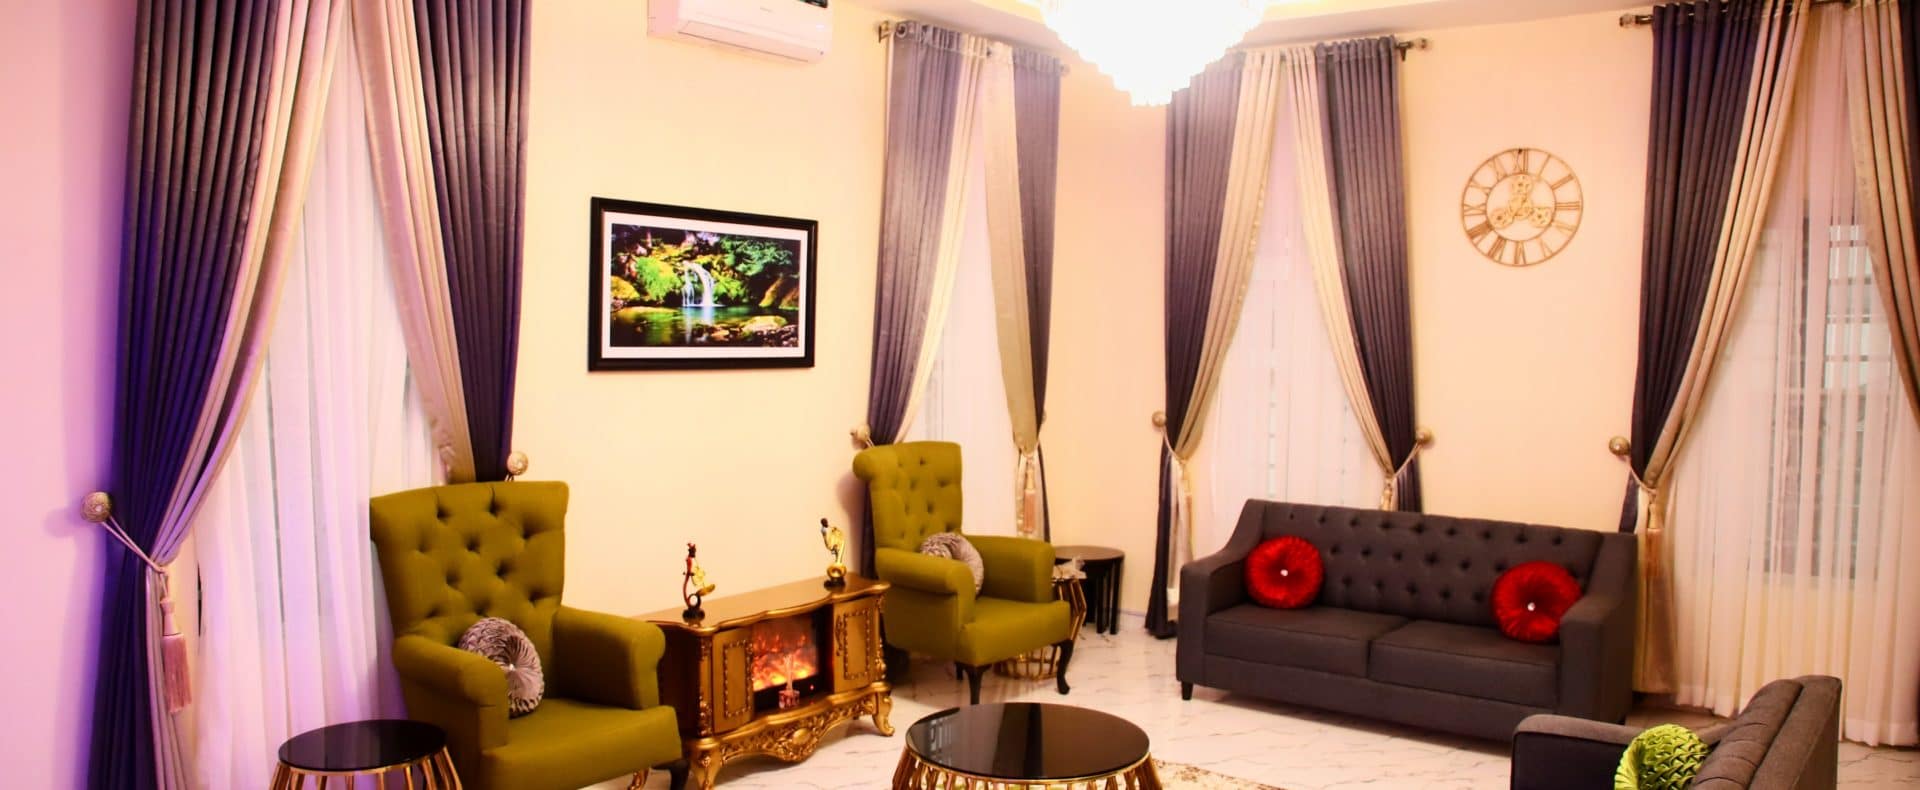 4 Bedroom Comfort Haven Short Let In Lekki Lagos Nigeria